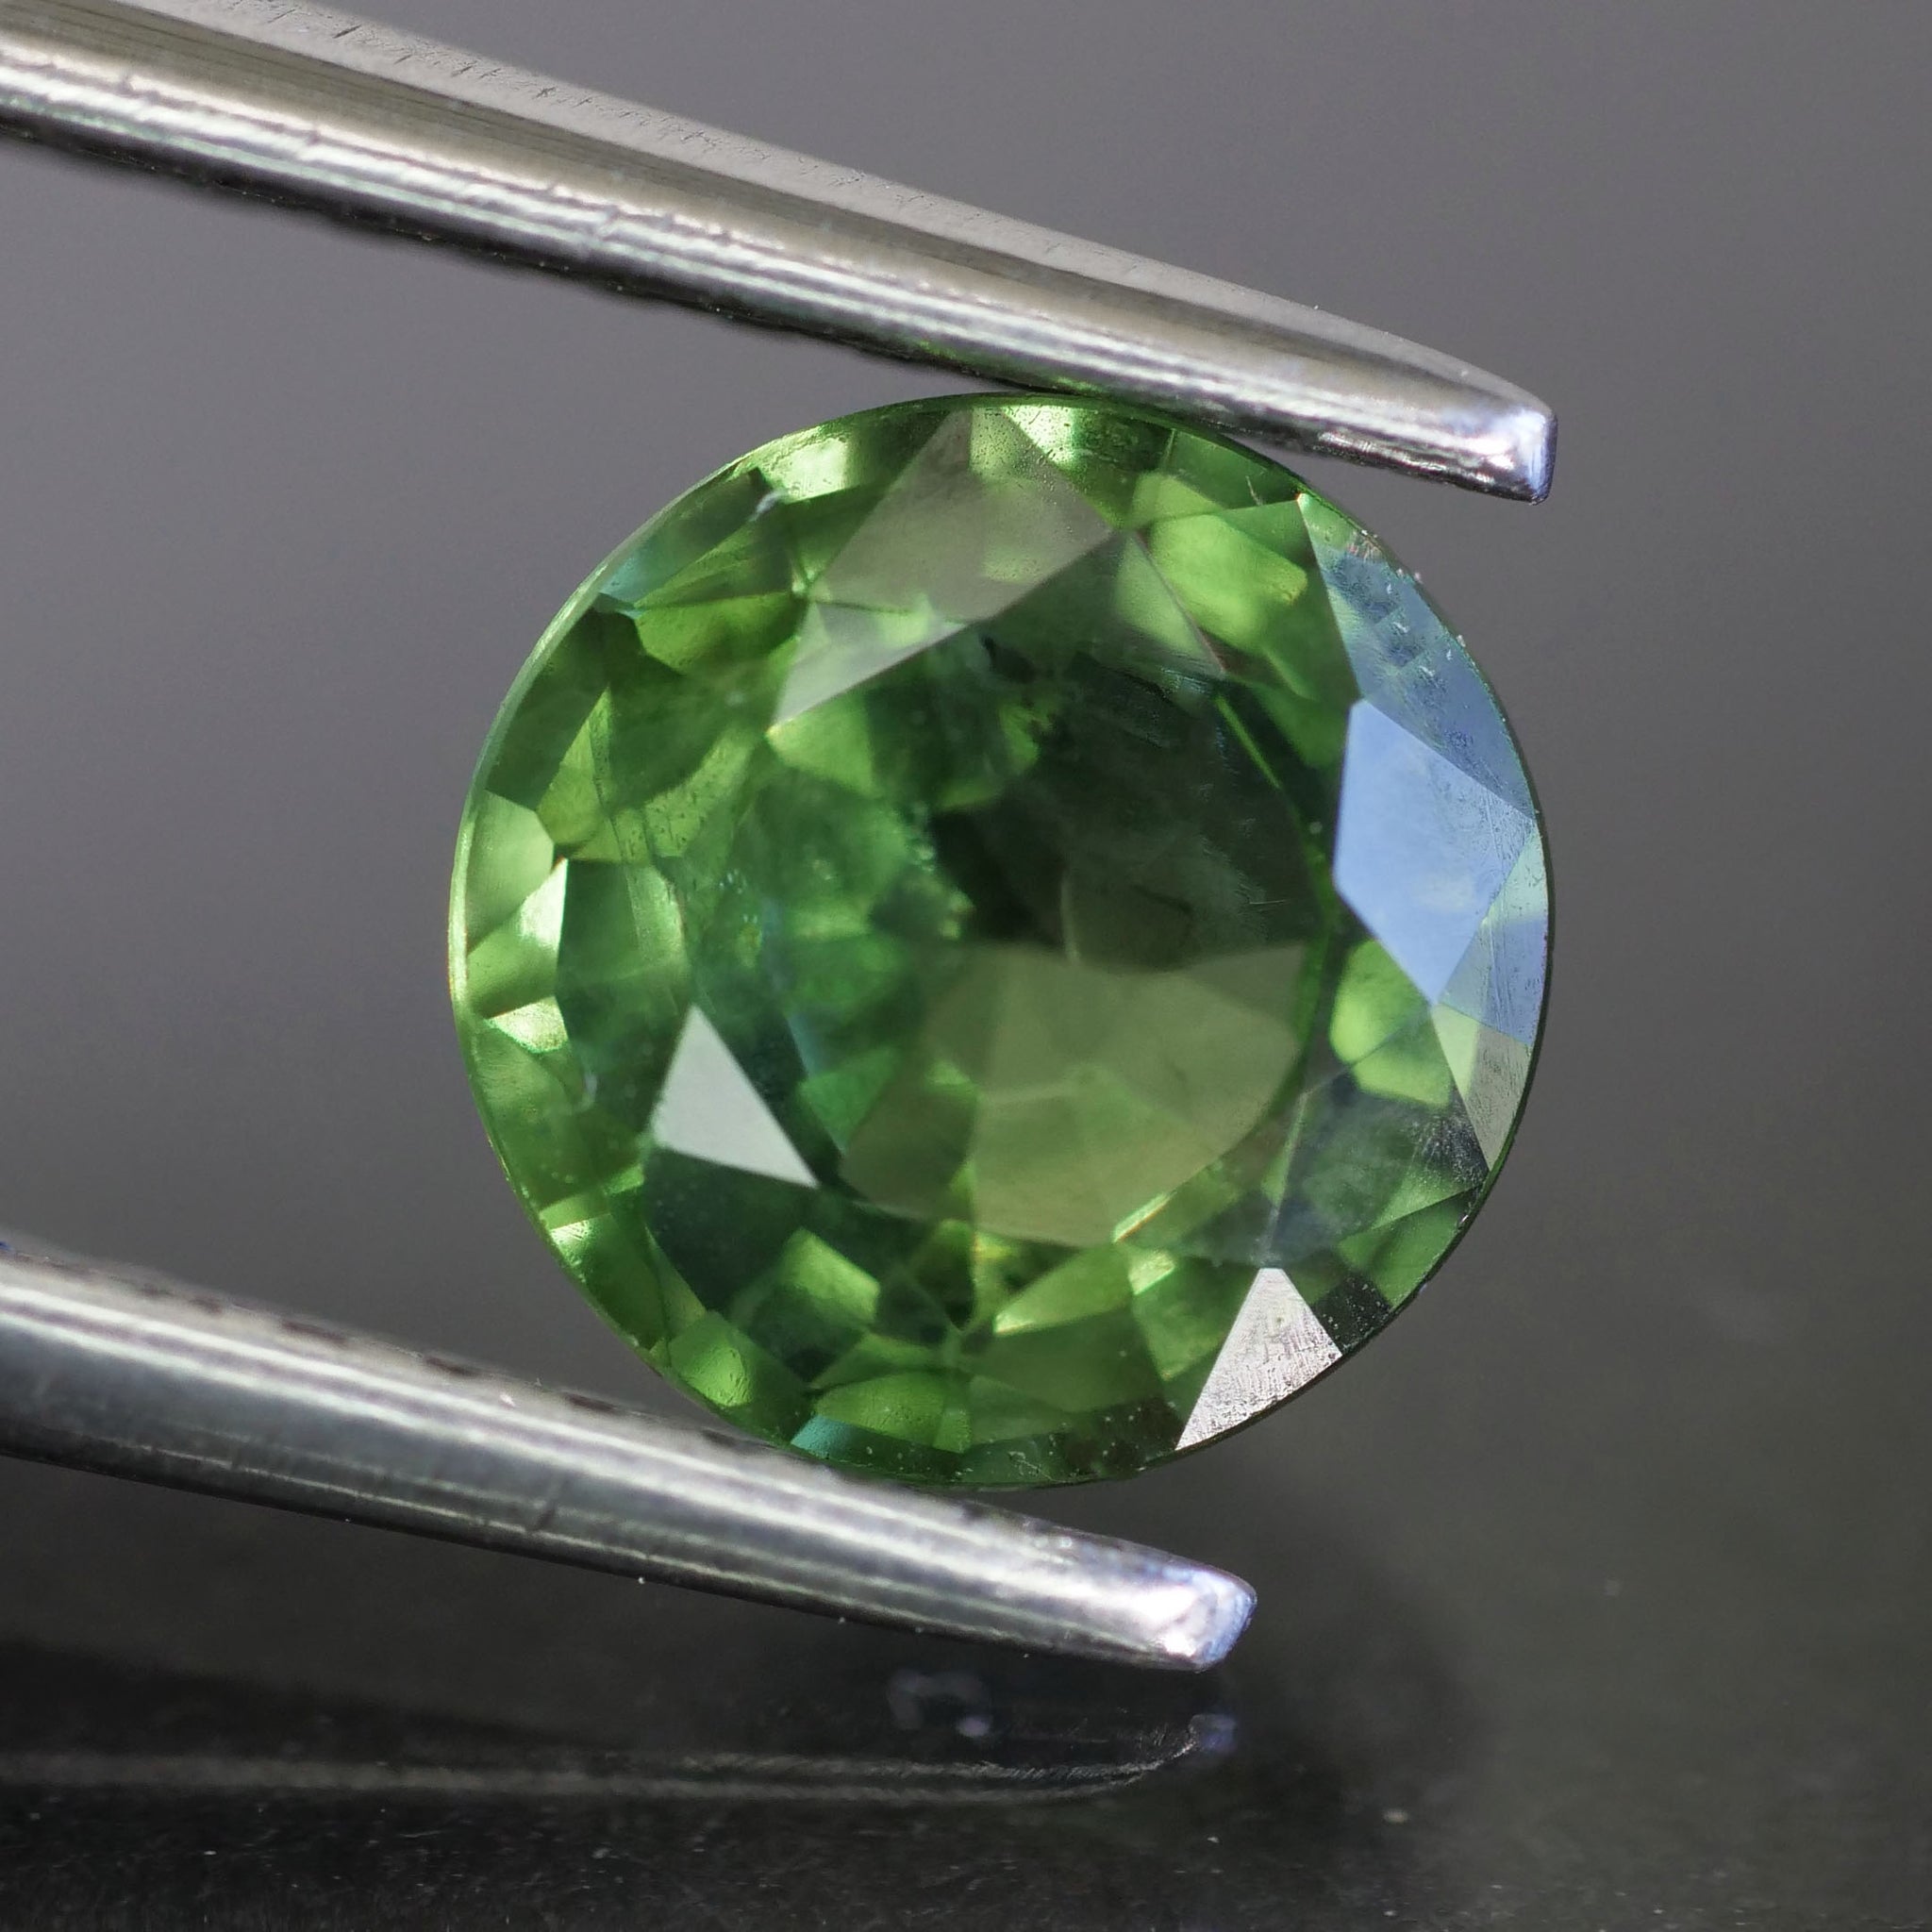 Sapphire | natural, green, round cut 6.5mm, 1.15 ct, Thailand - Eden Garden Jewelry™